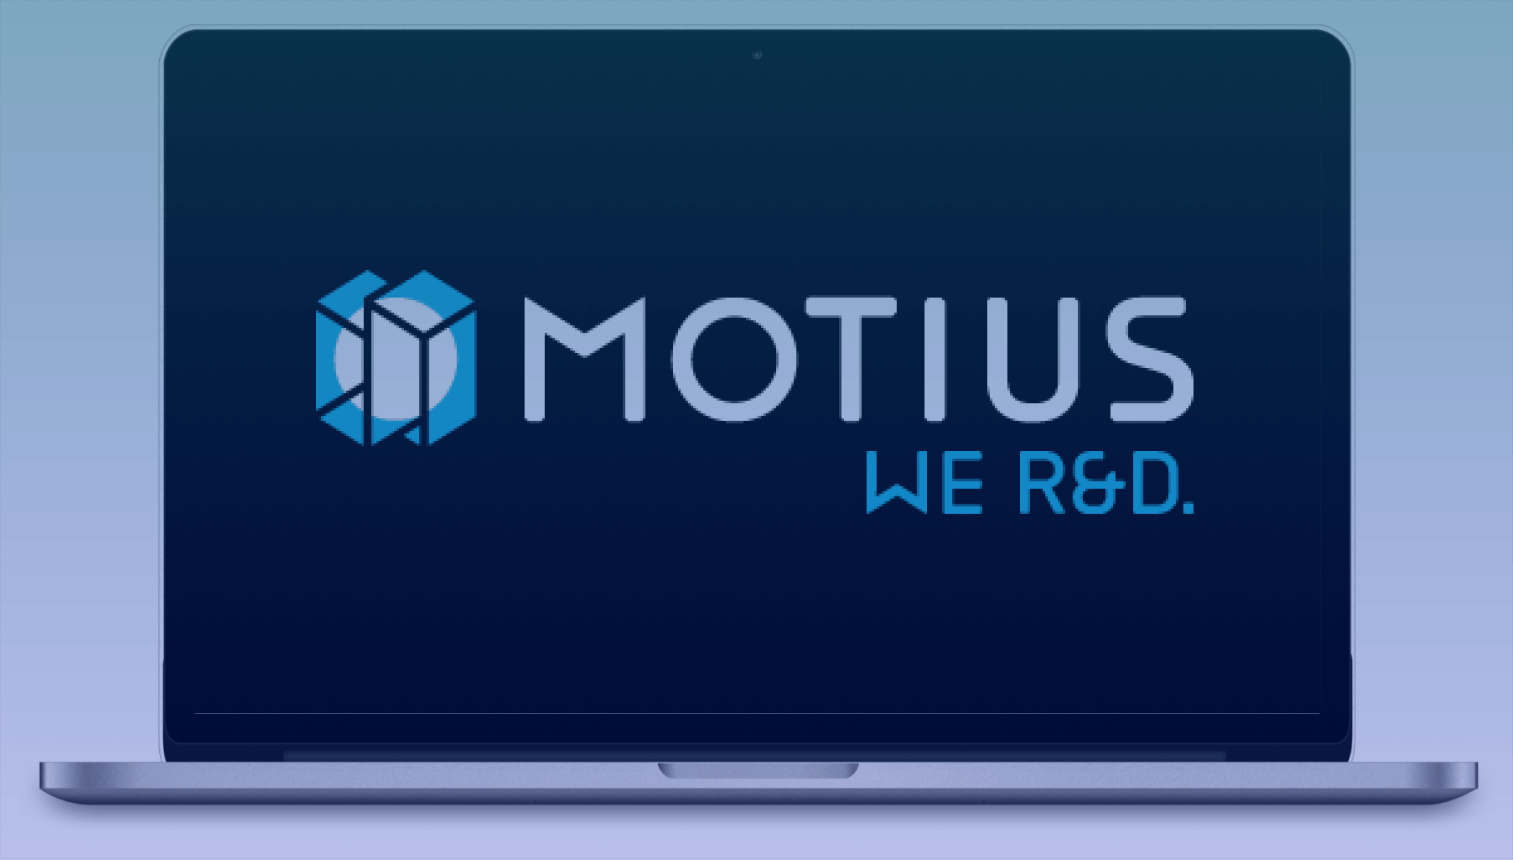 Motius se asocia con Werk24 para ofrecer soluciones innovadoras